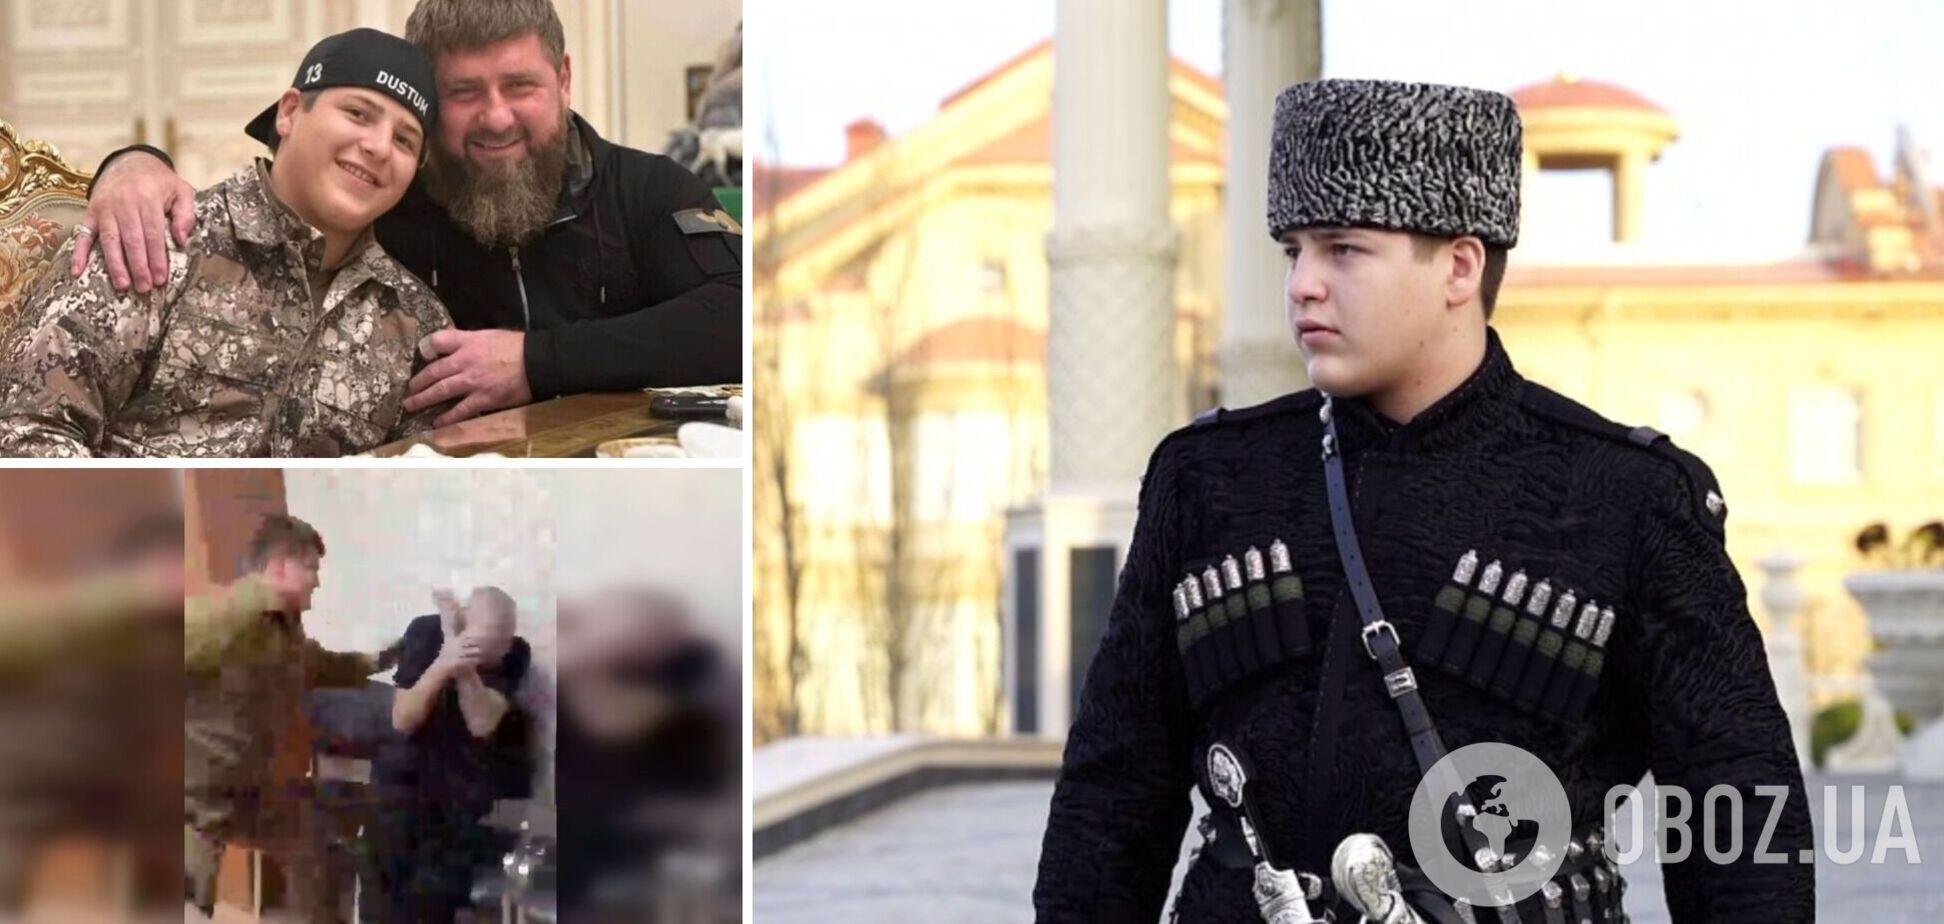 Сын 'полуживого' Кадырова отметился новой выходкой после скандала с избиением заключенного: что это значит и может ли он возглавить Чечню